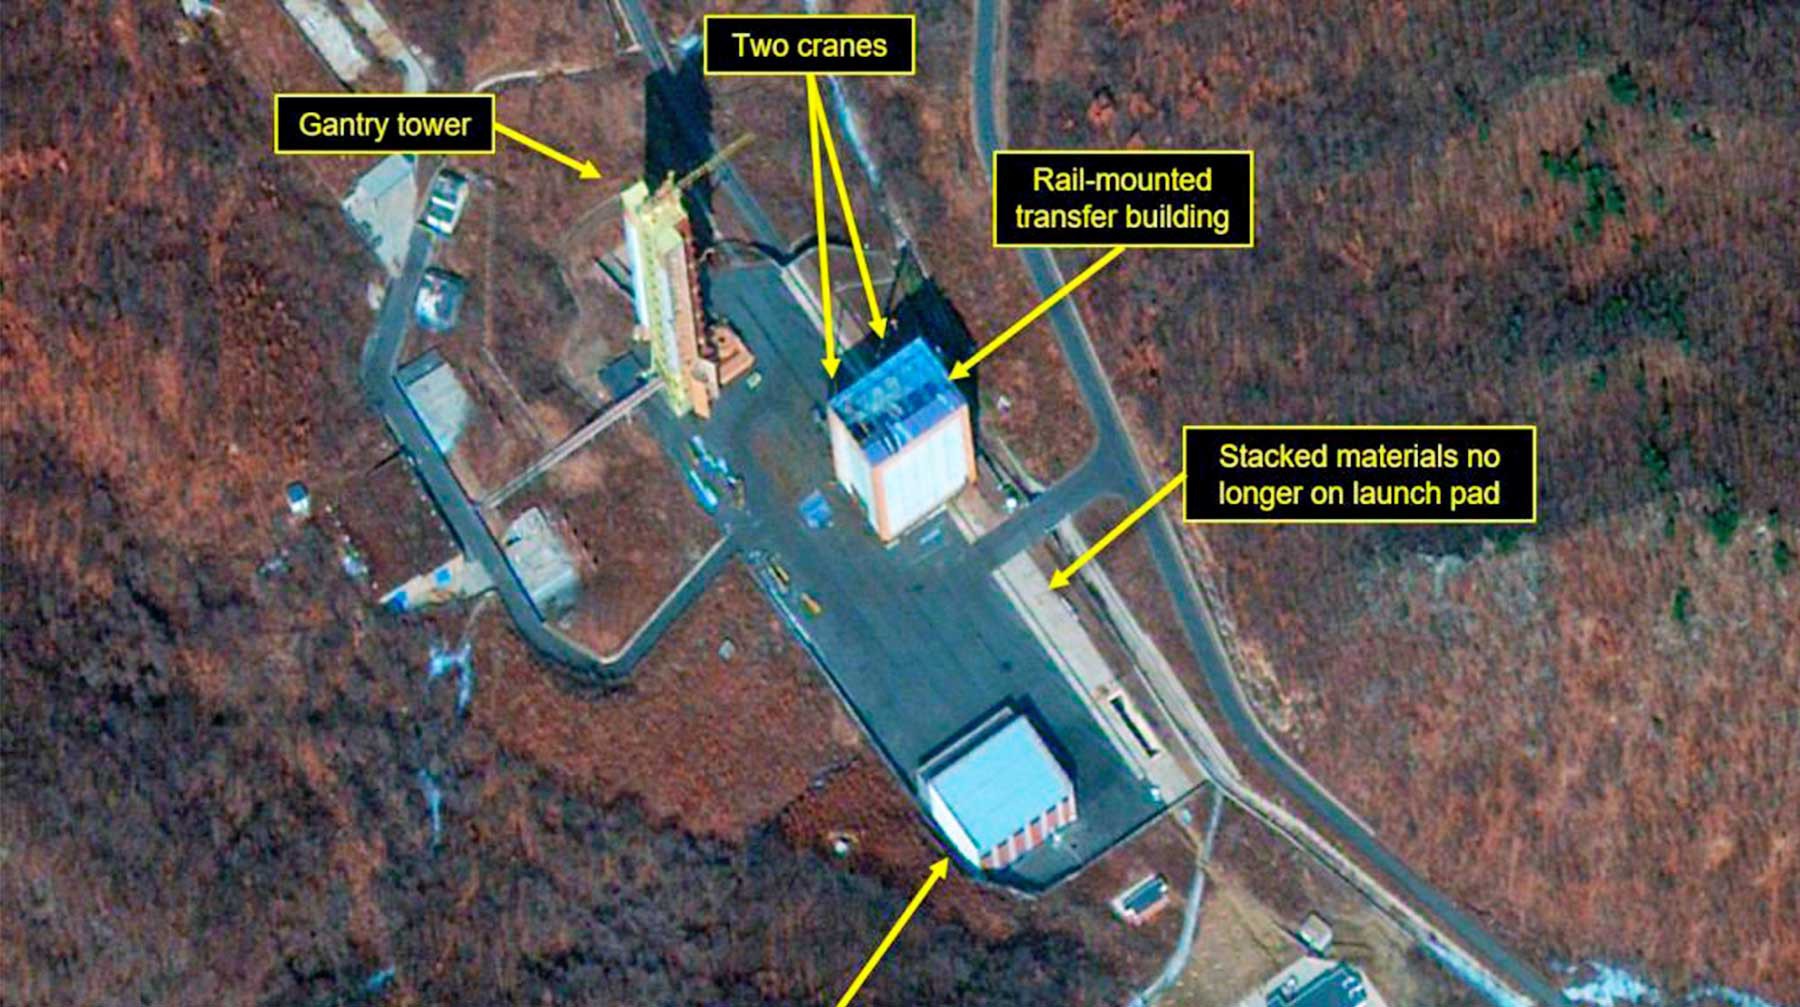 Dailystorm - Спутник обнаружил восстановление ракетного полигона в КНДР